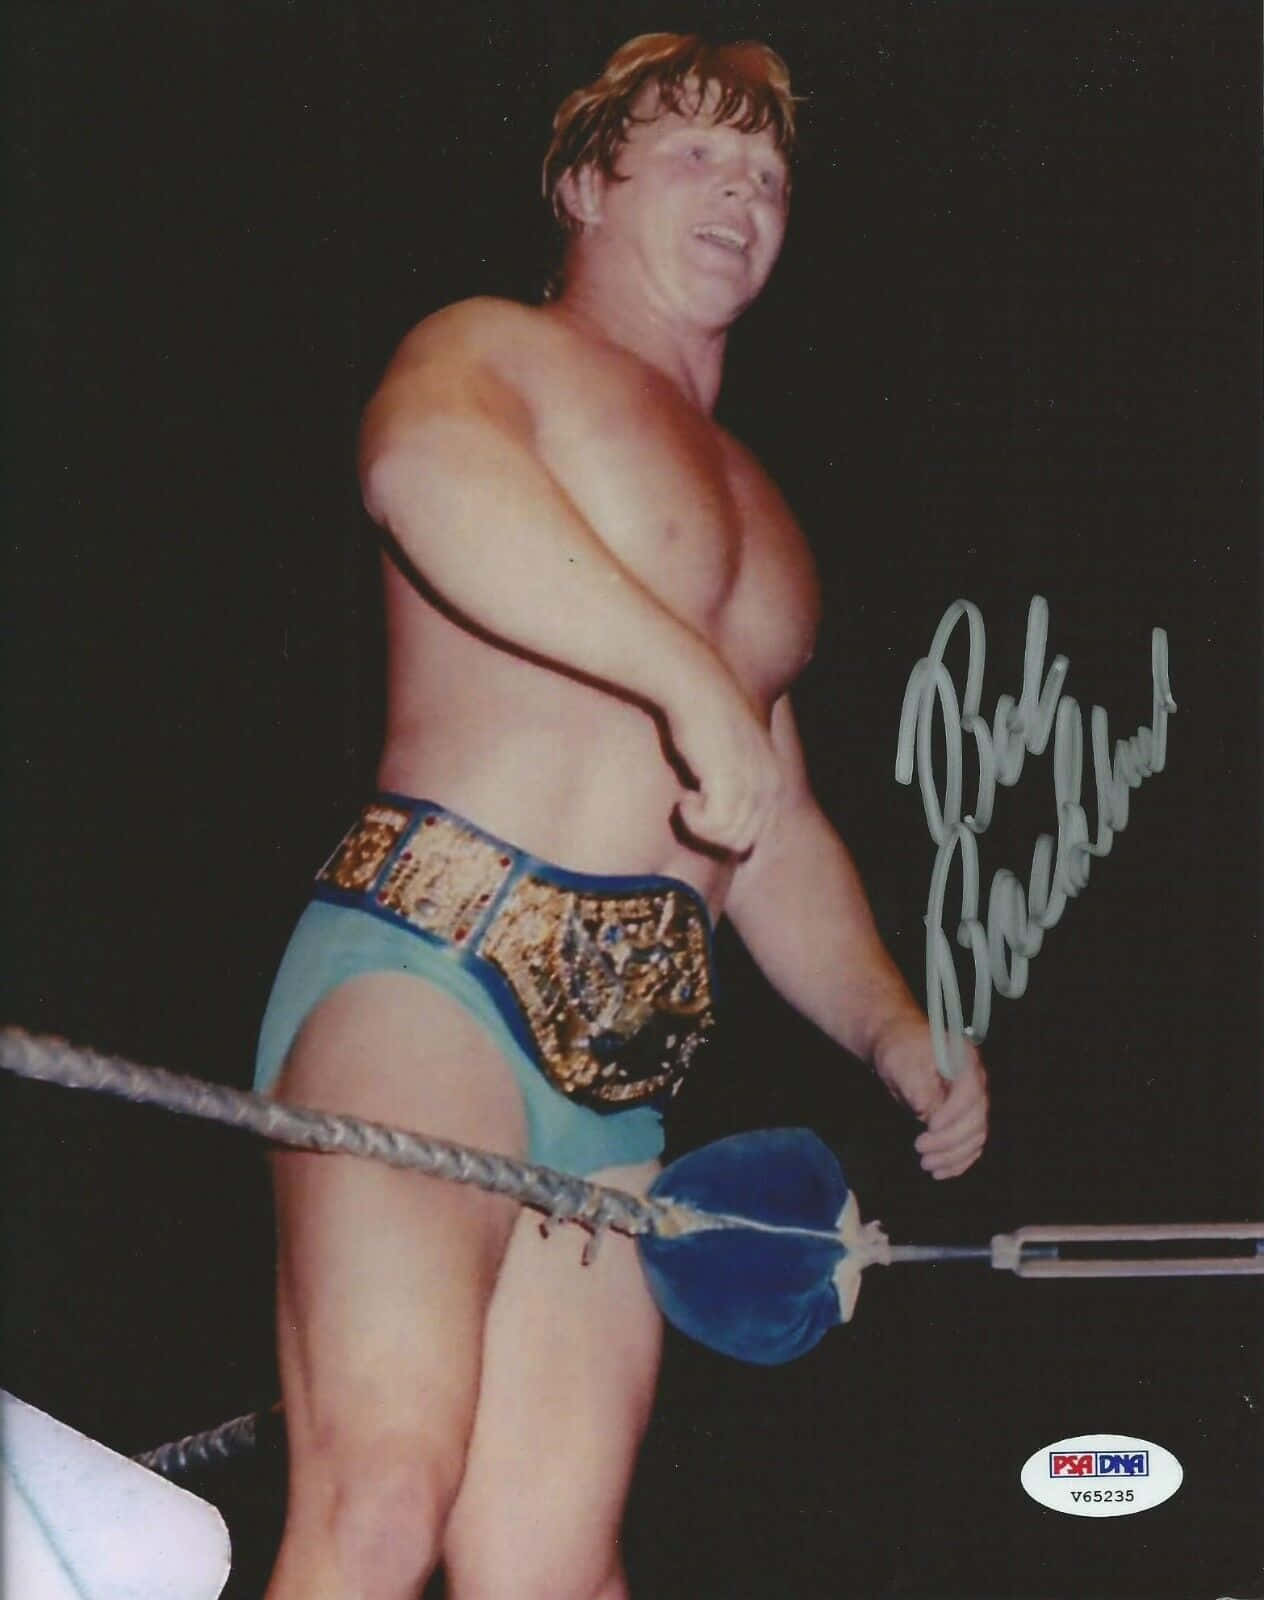 Bob Backlund WWF Championship Belt Autograf Wallpaper. Wallpaper